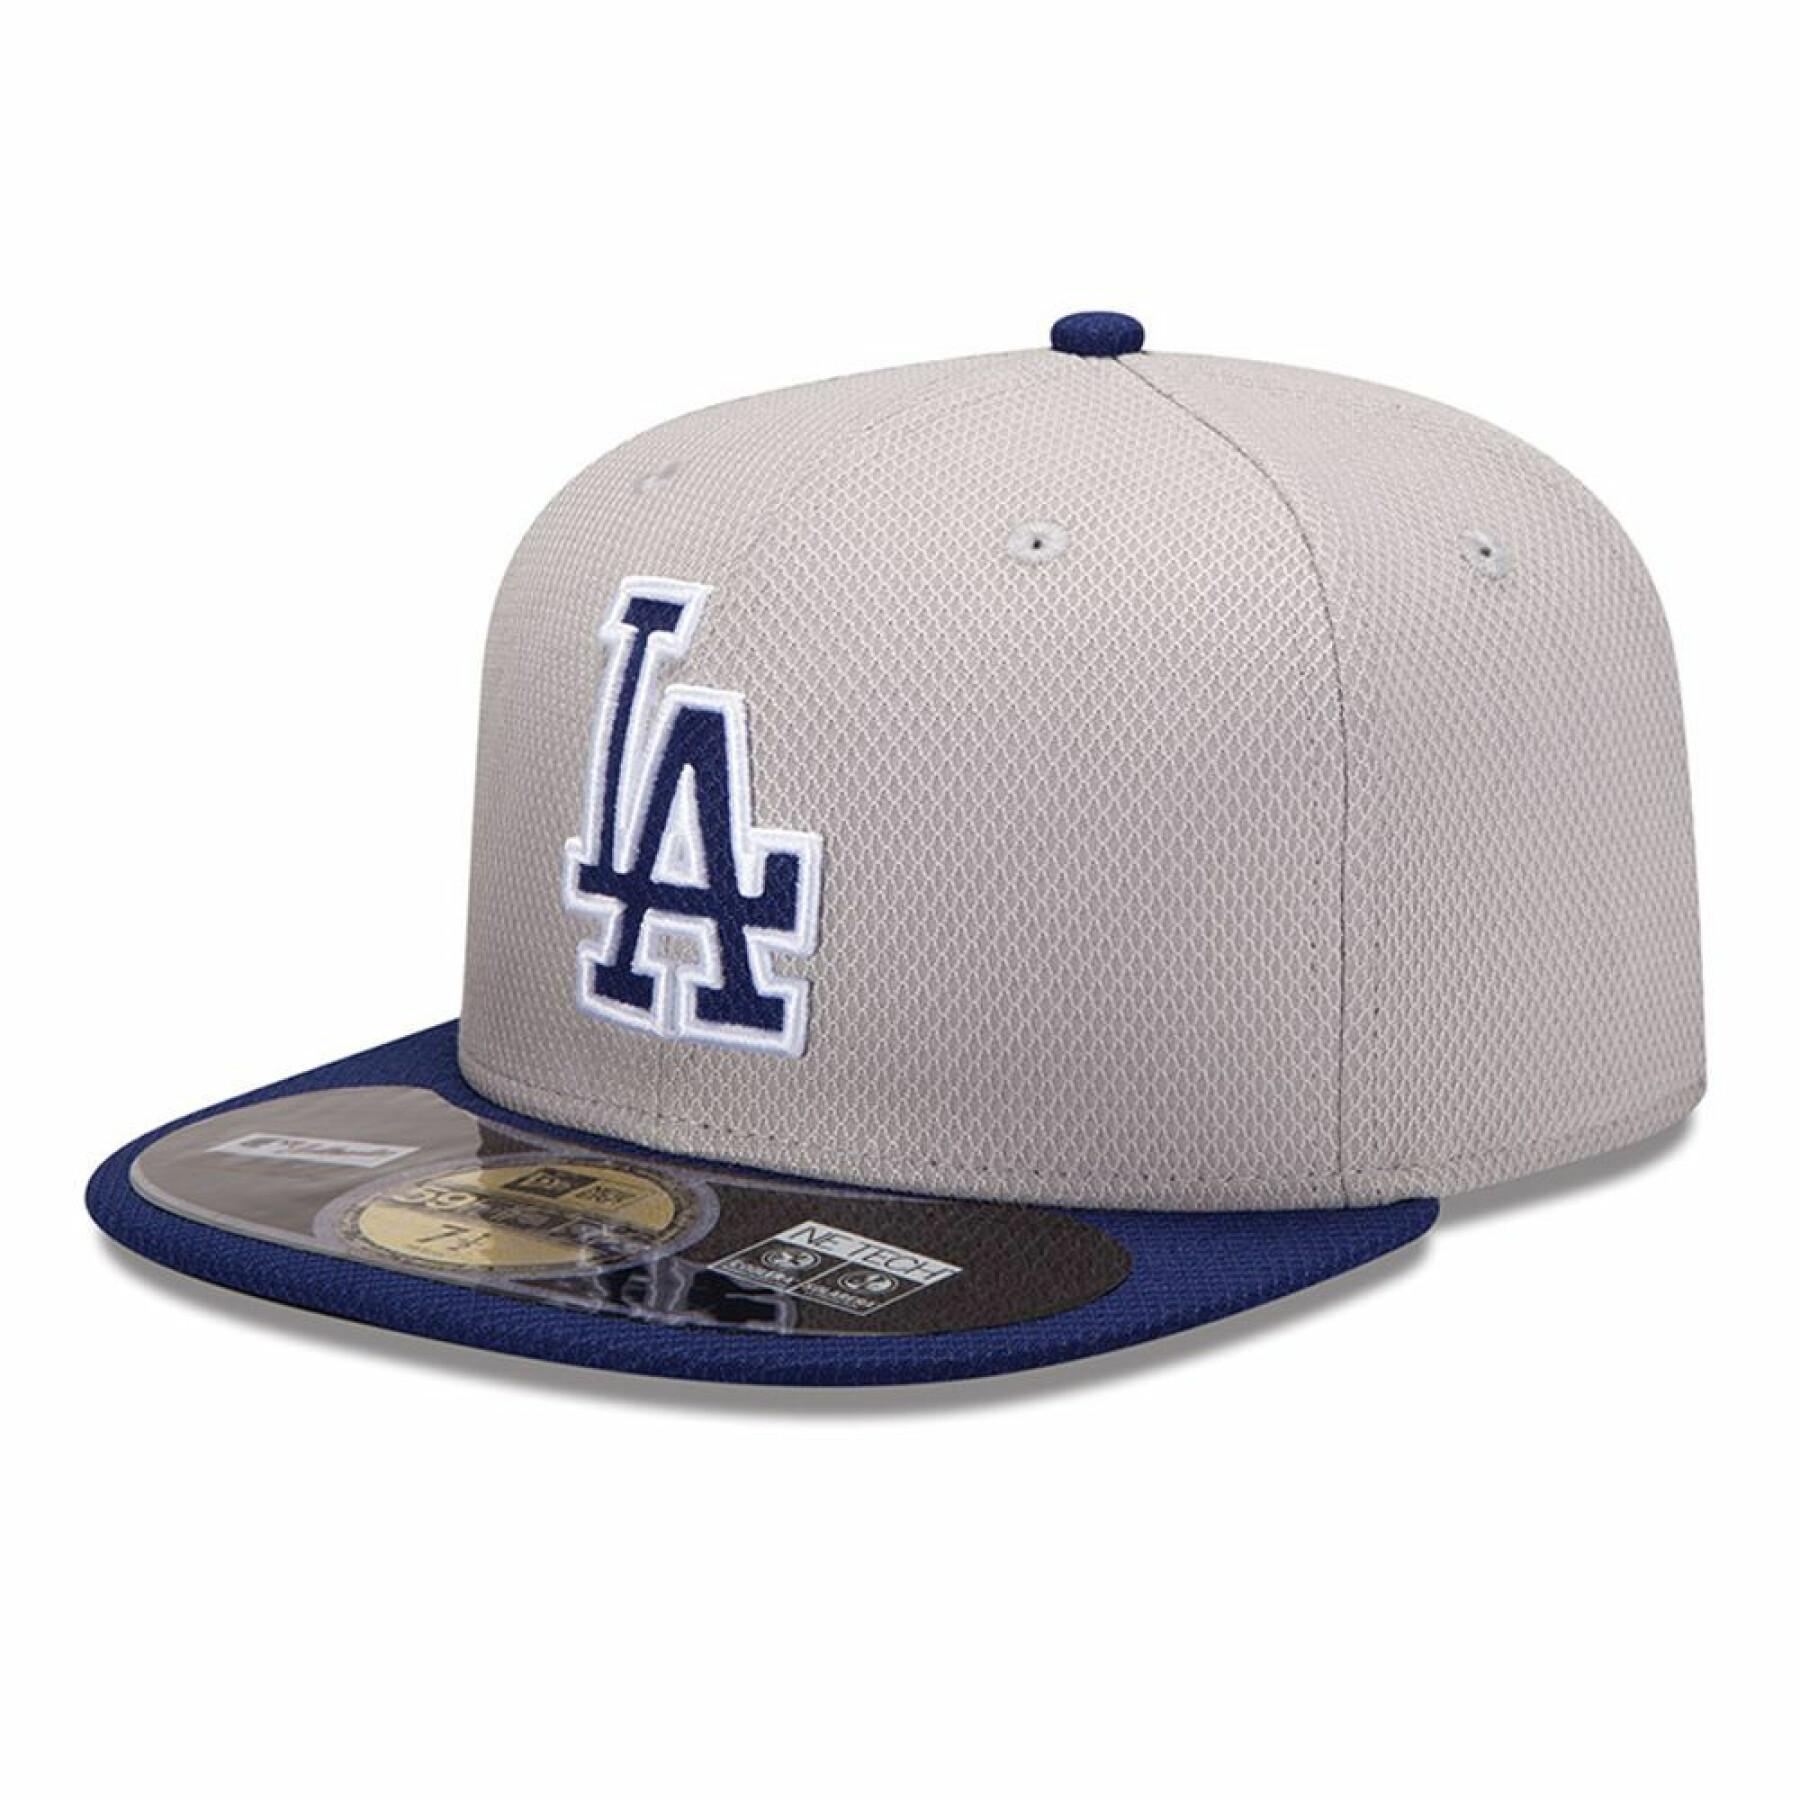 Kapsyl New Era MLB Diamond Era 59fifty Los Angeles Dodgers